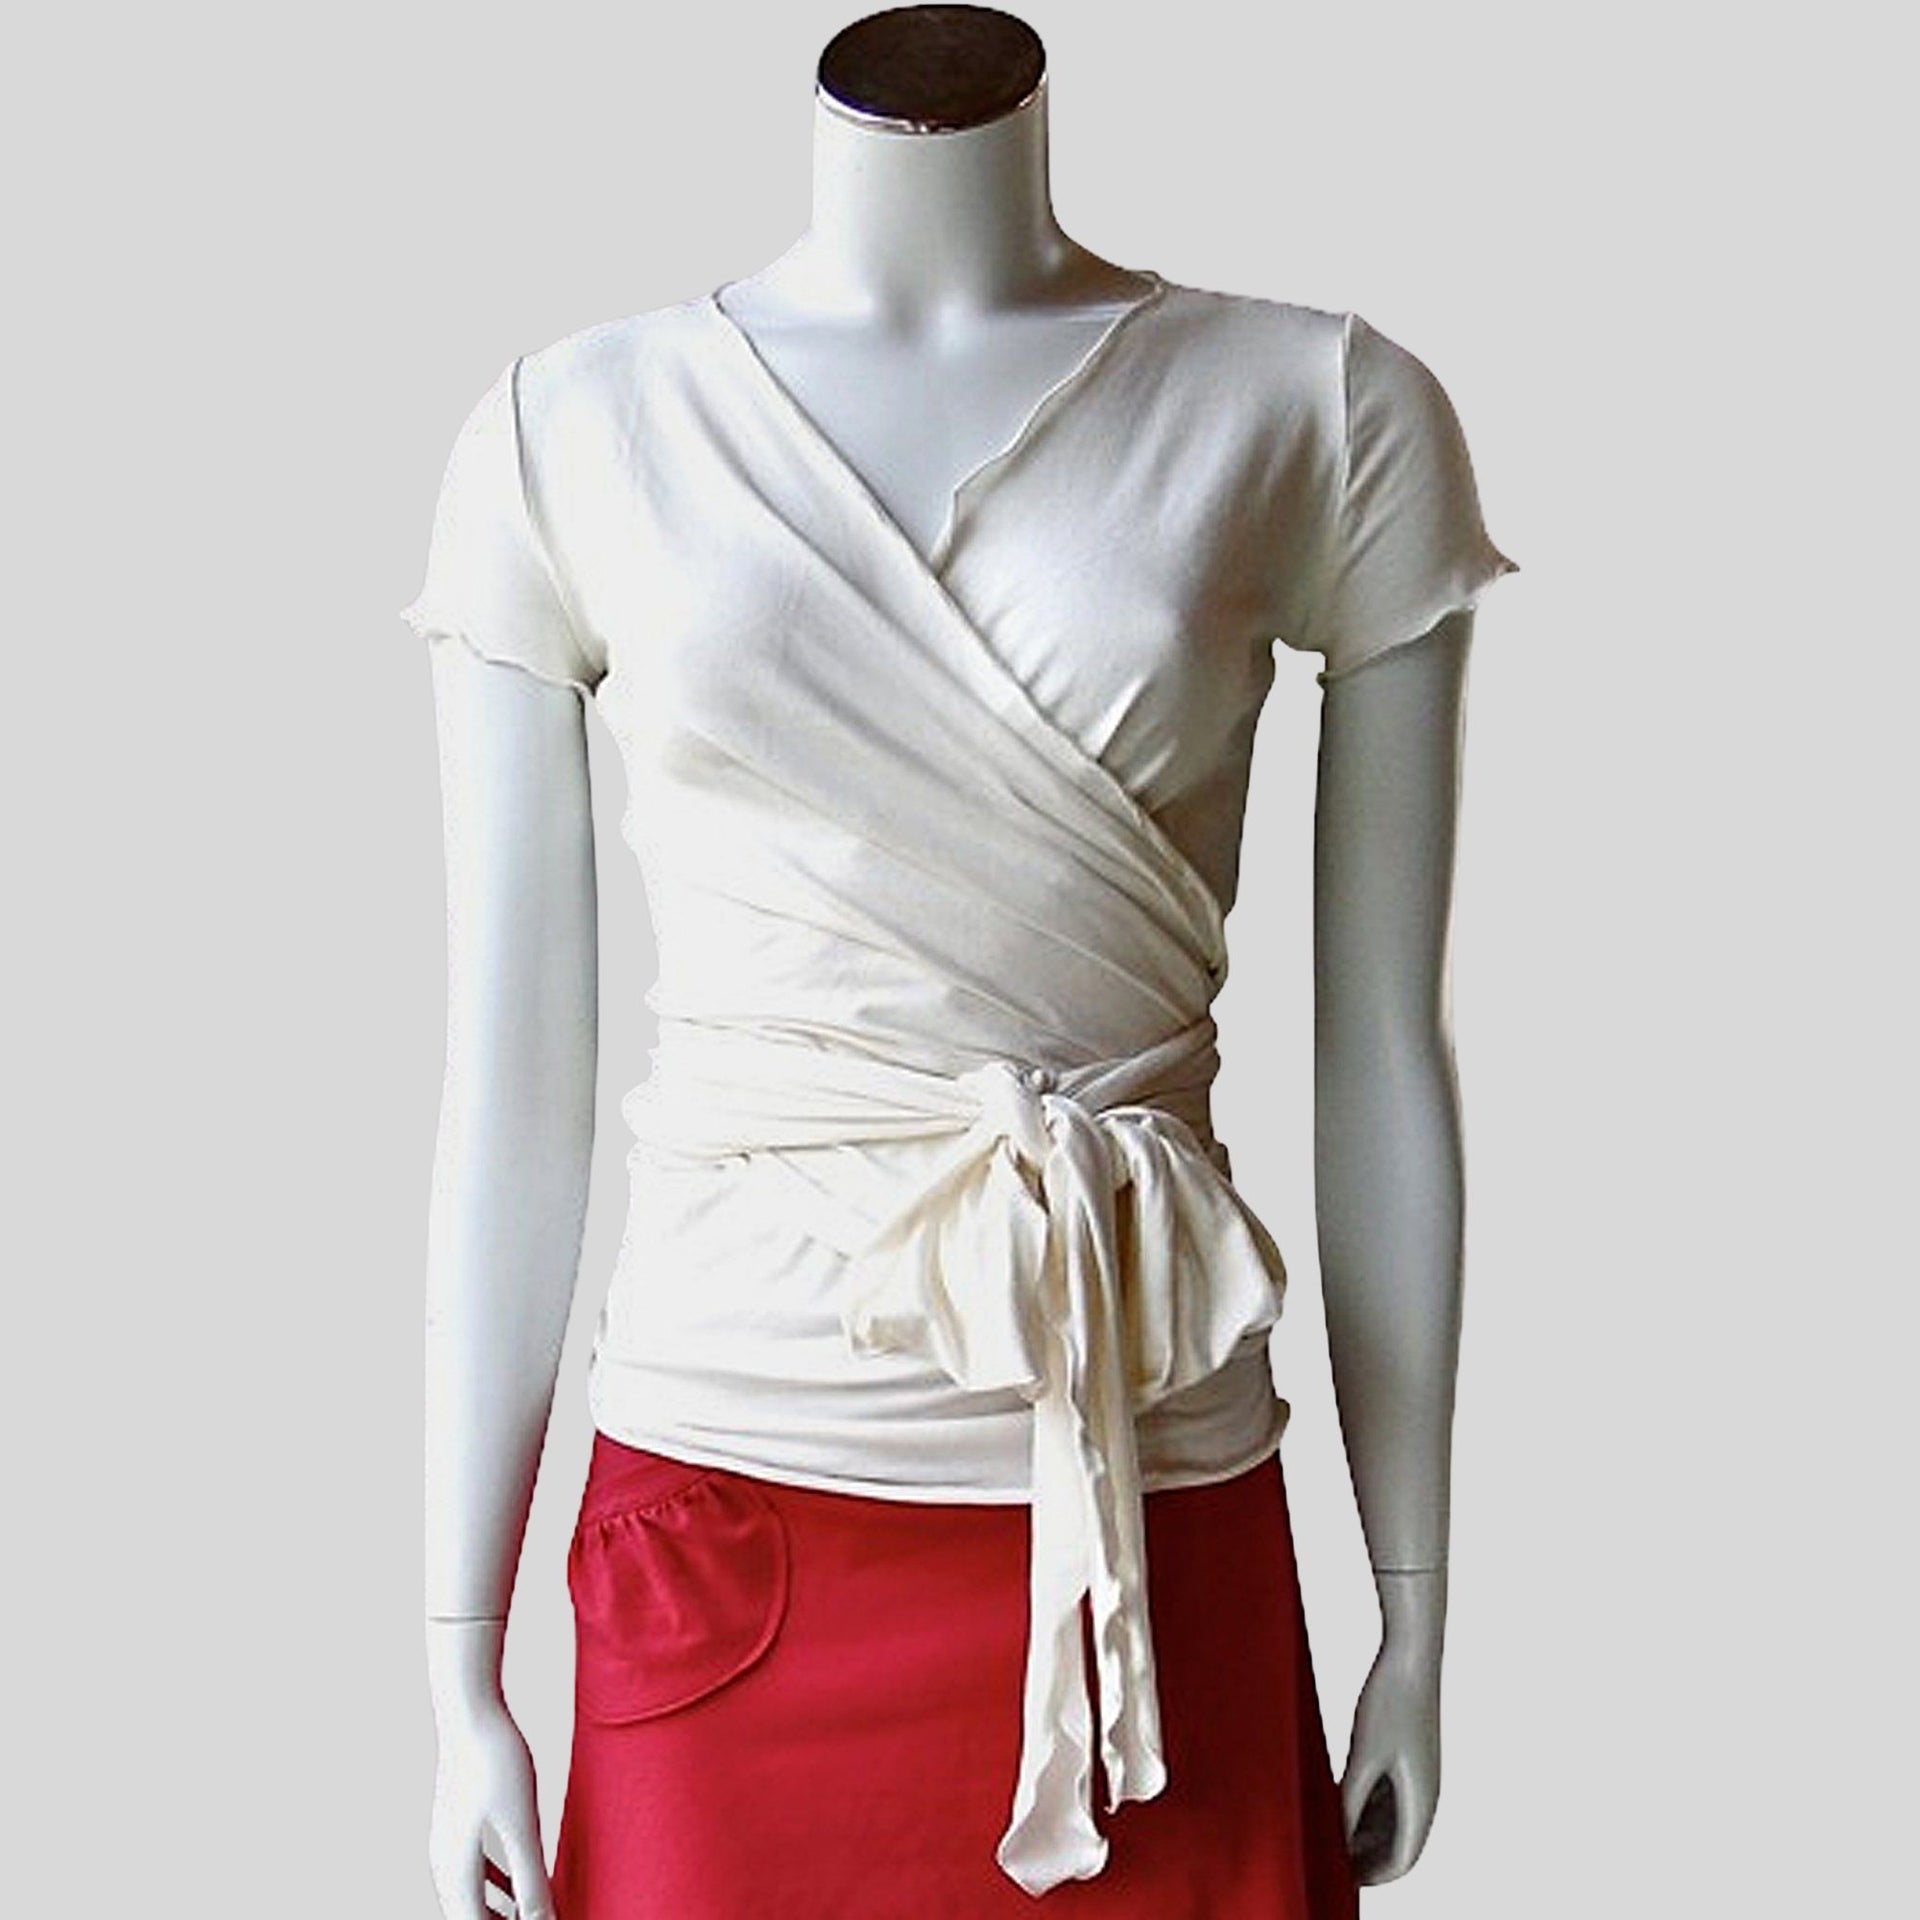 Yoga wrap shirt made in Canada  Shop organic cotton wrap top women's –  econica